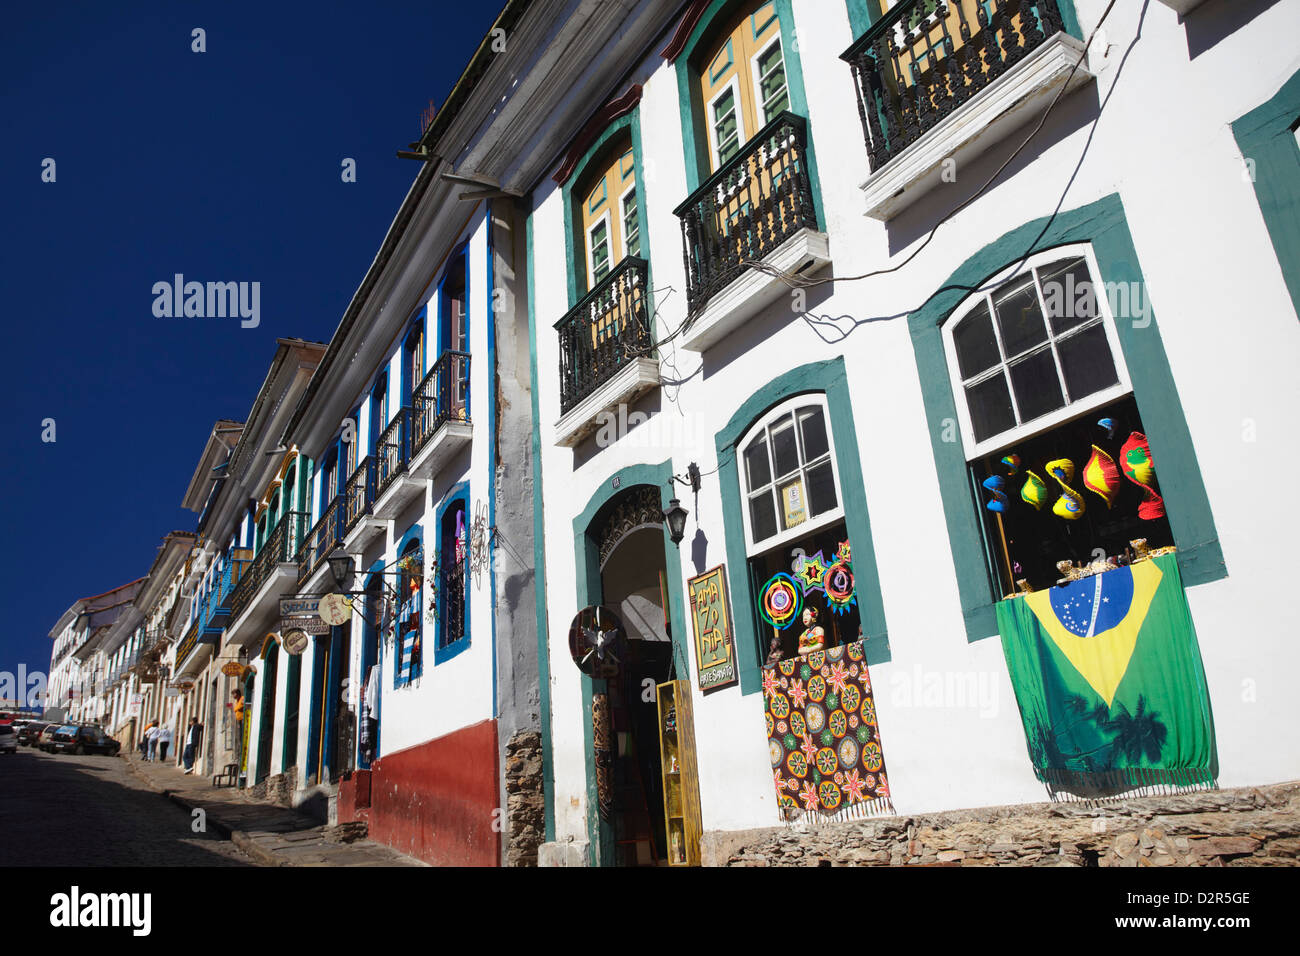 Boutique de souvenirs, d'Ouro Preto, UNESCO World Heritage Site, Minas Gerais, Brésil, Amérique du Sud Banque D'Images